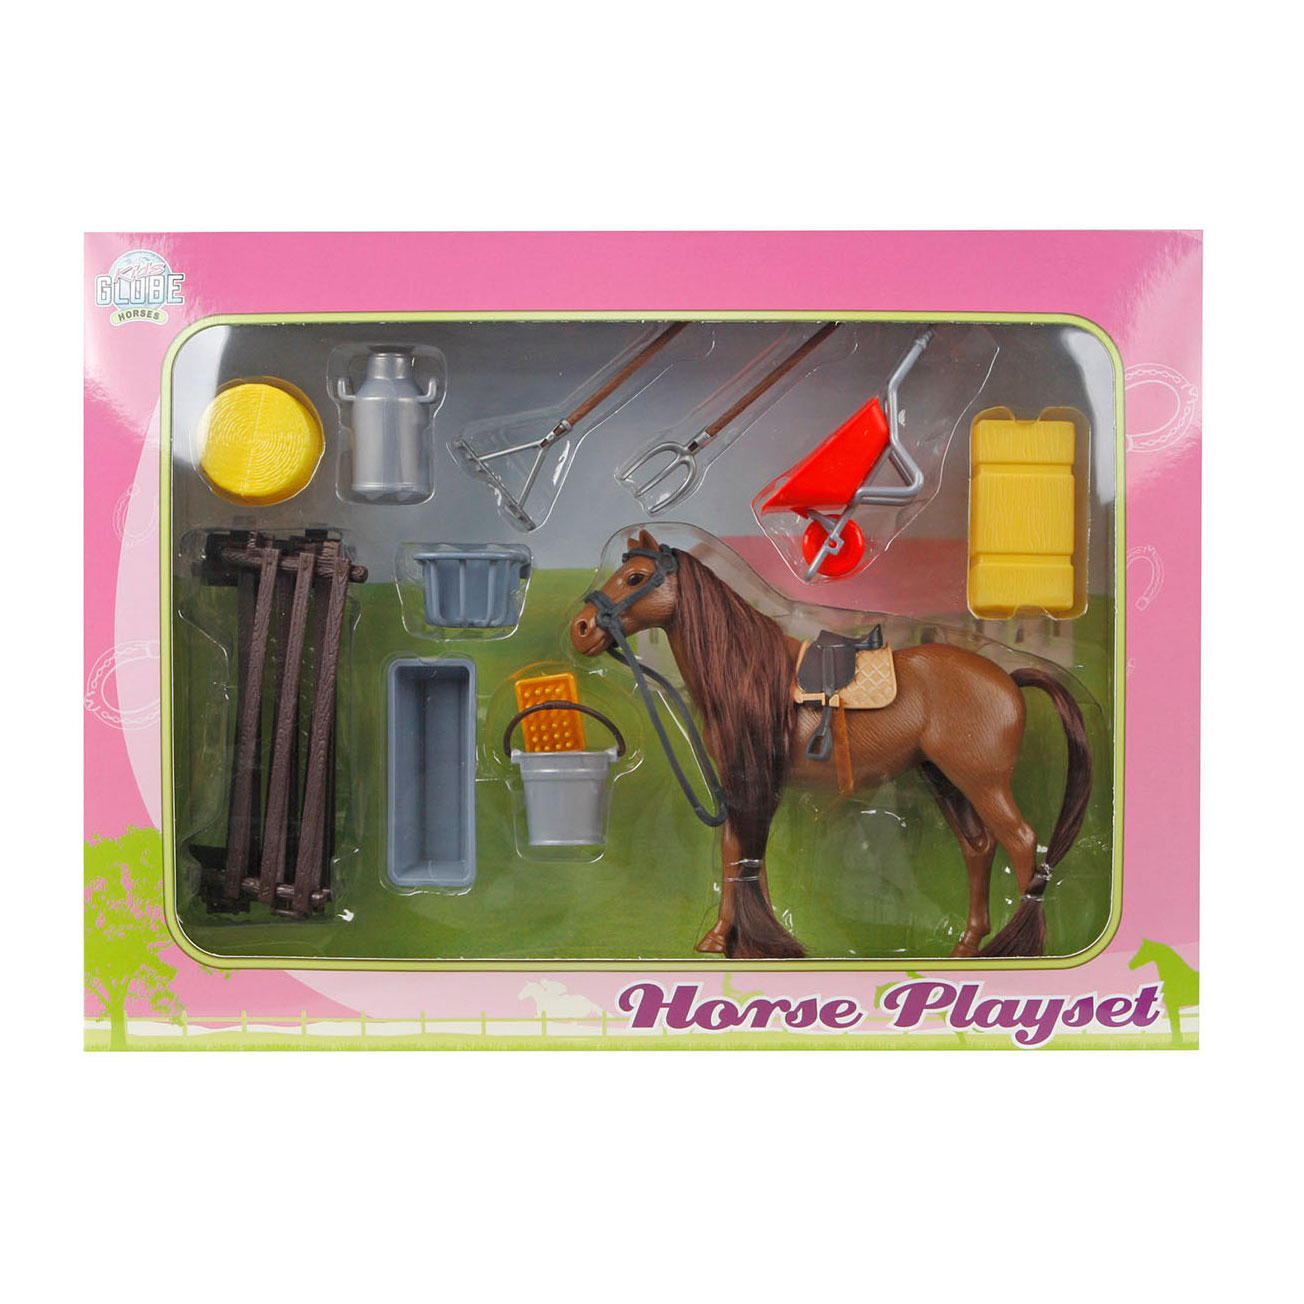 Ensemble de jeu Kids Globe avec cheval et accessoires, 13 cm